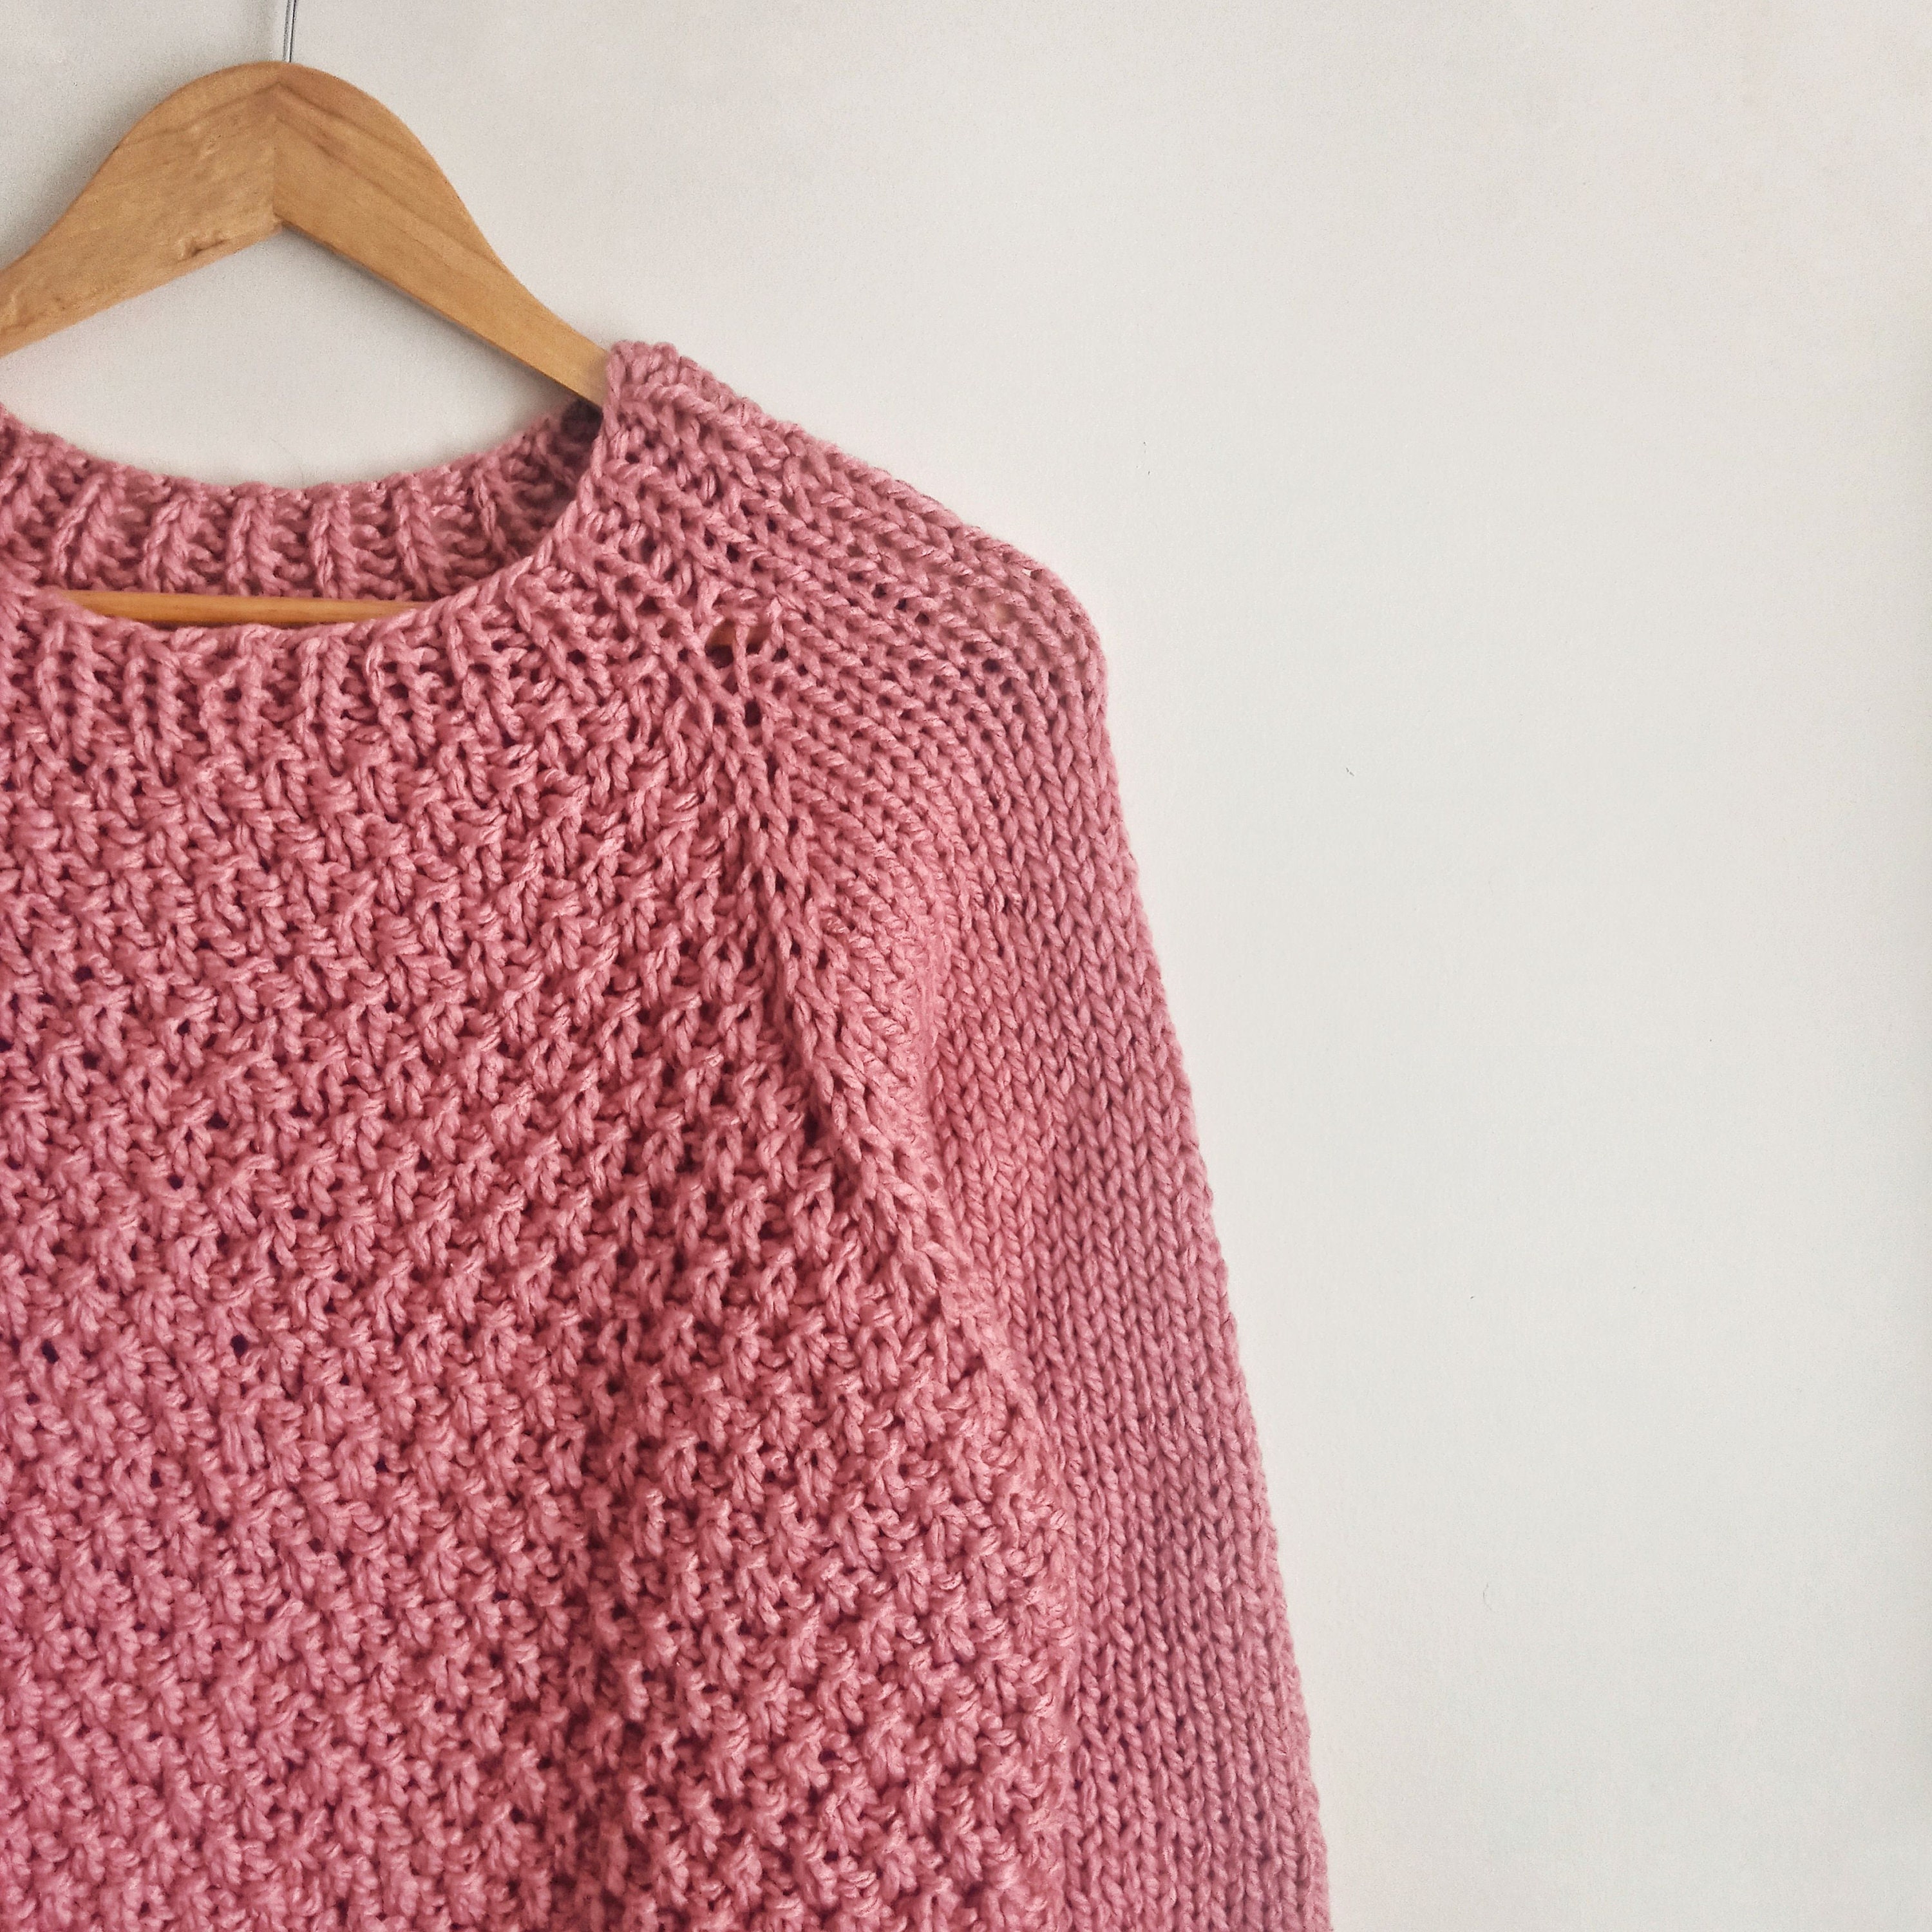 Patrón de tejido en suéter raglan tejido dos agujas - Etsy España